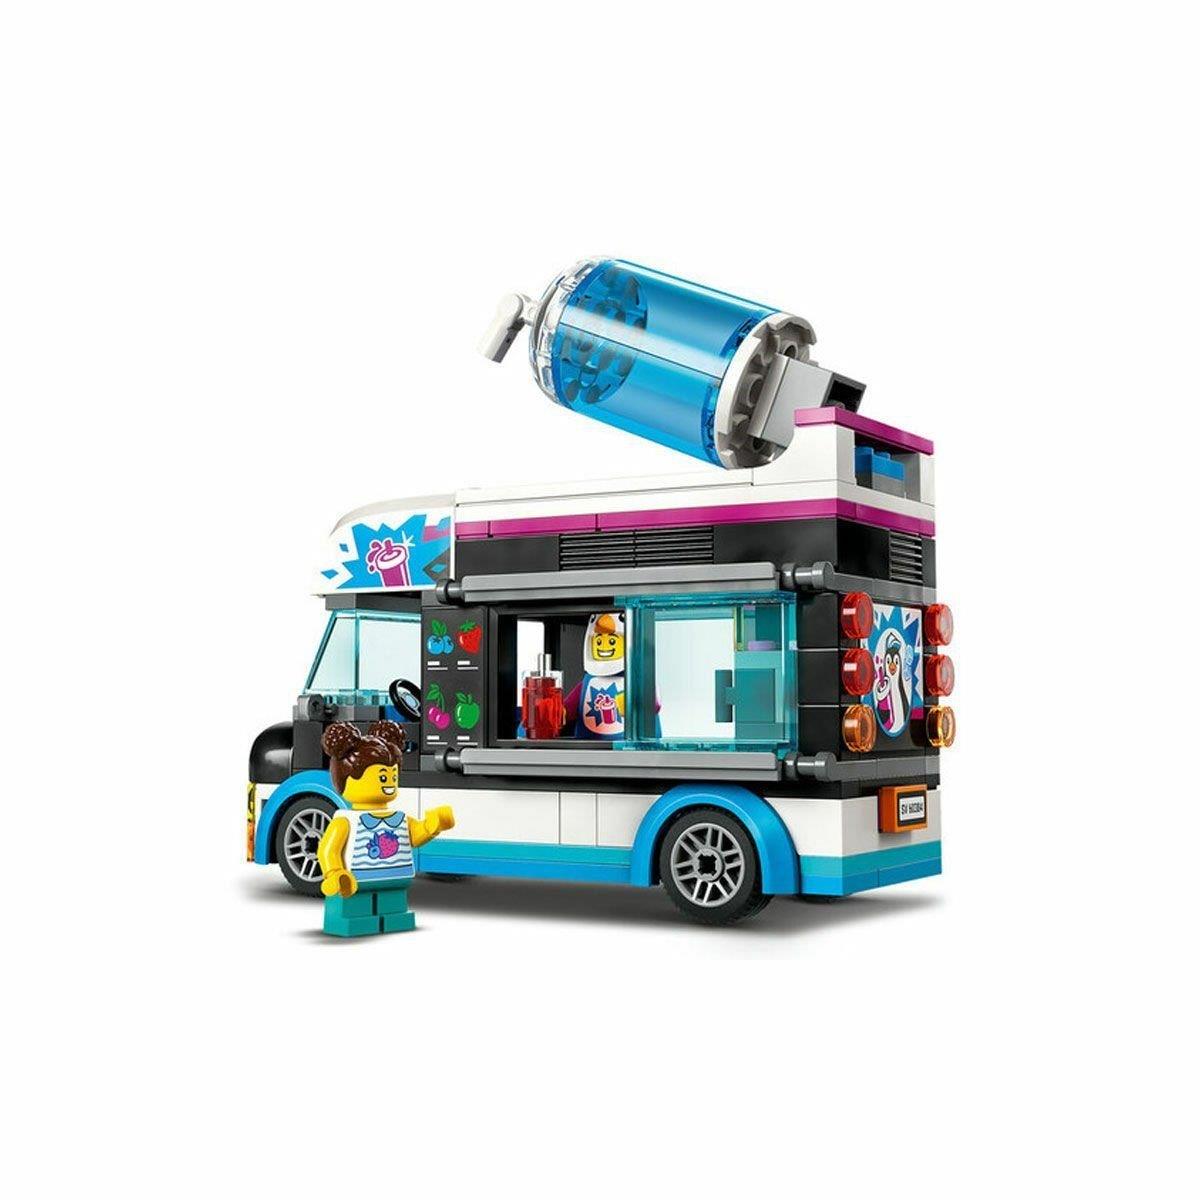 60384 Lego City - Penguen İçecek Arabası 194 parça +5 yaş